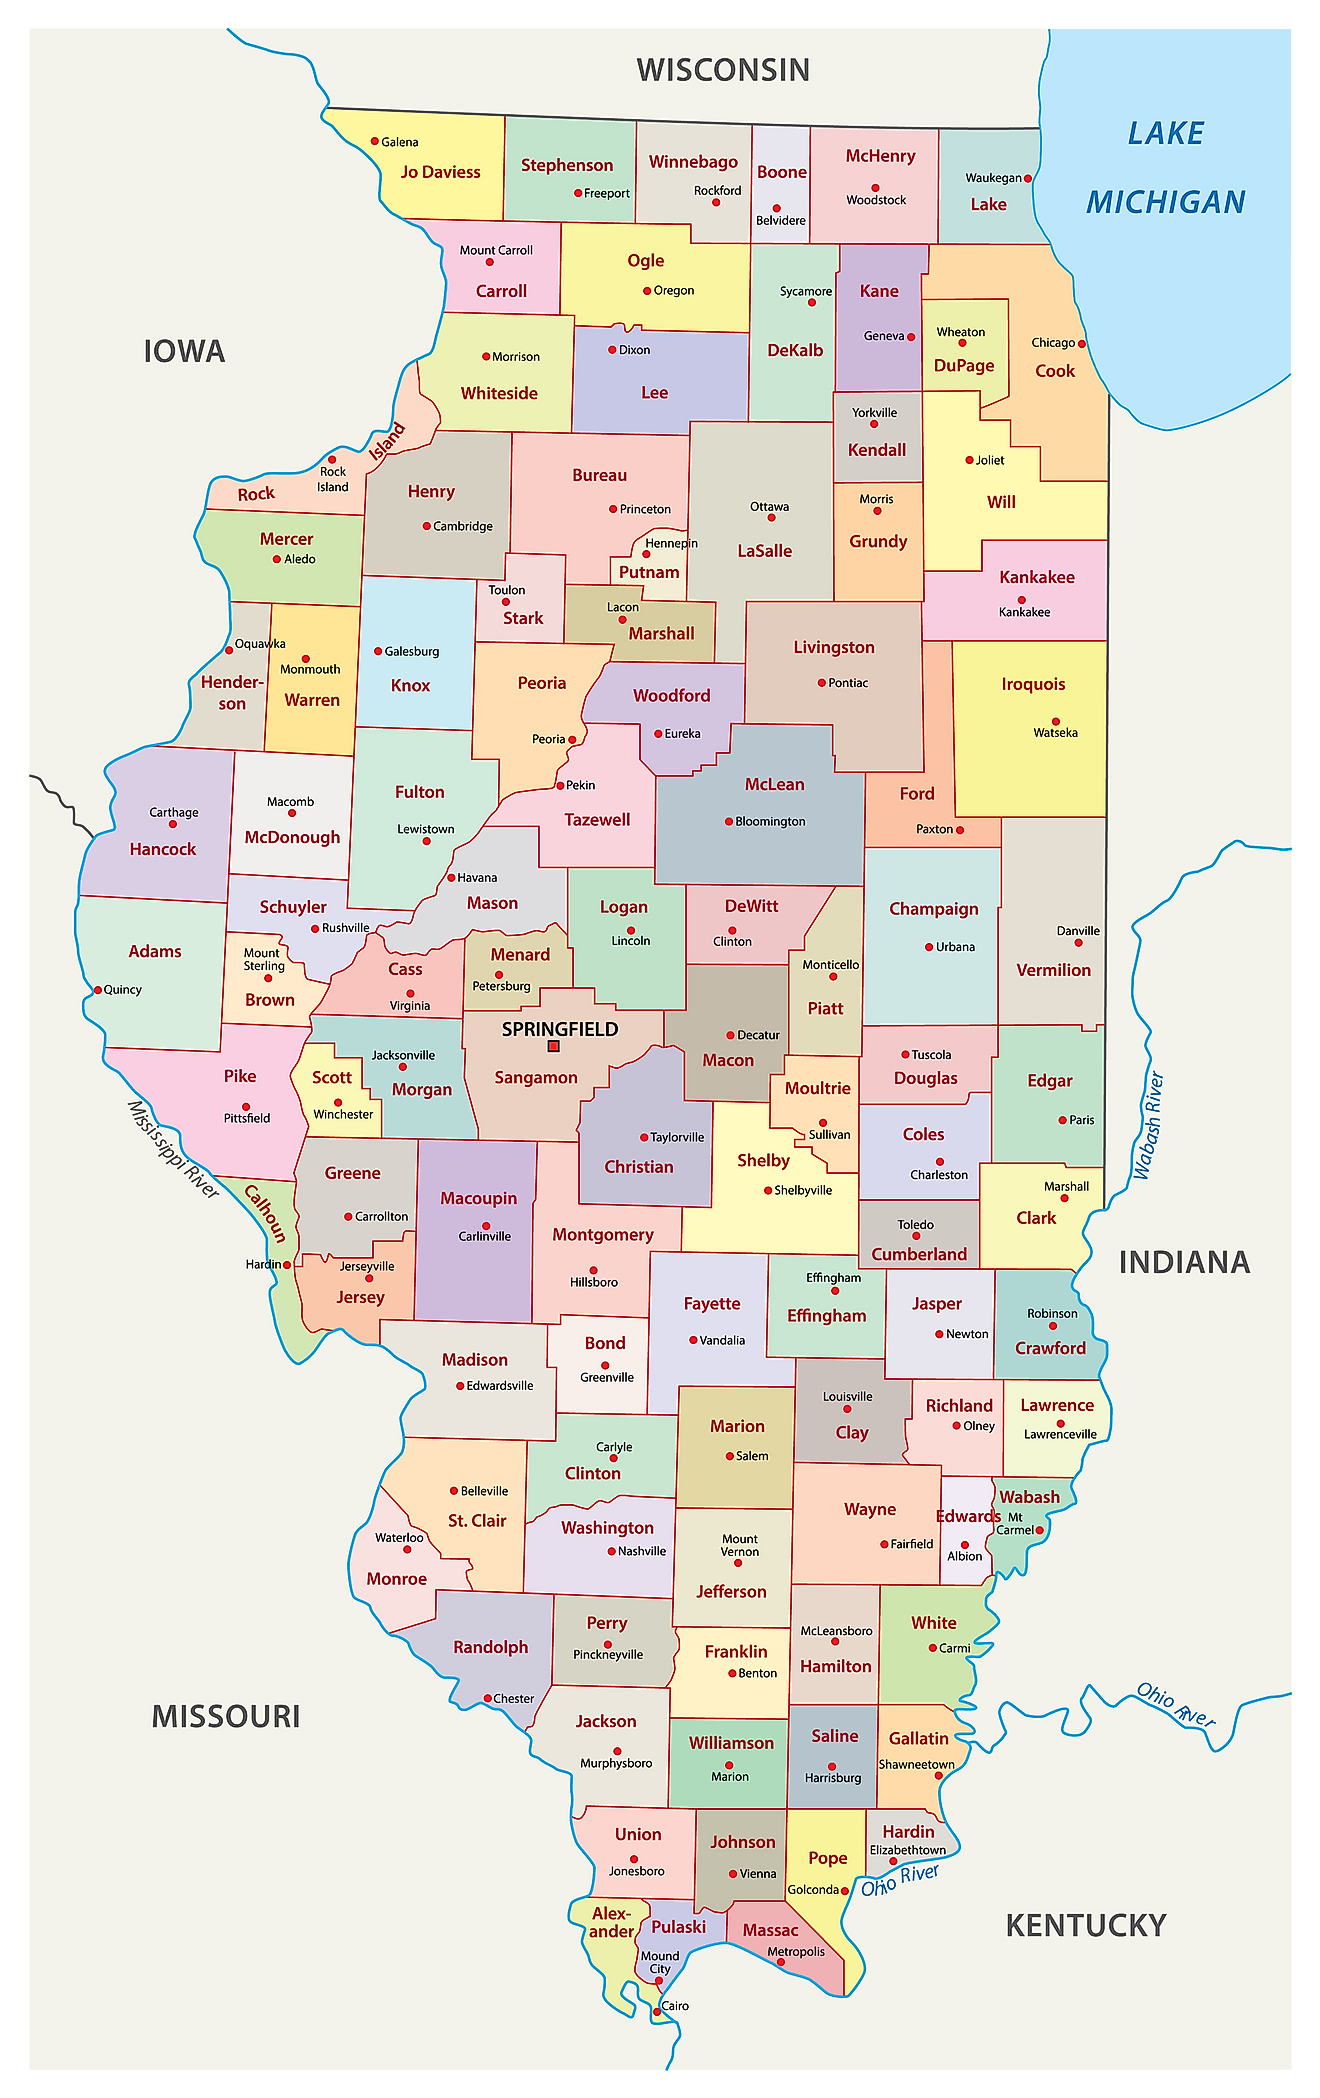 Illinois Maps Facts World Atlas